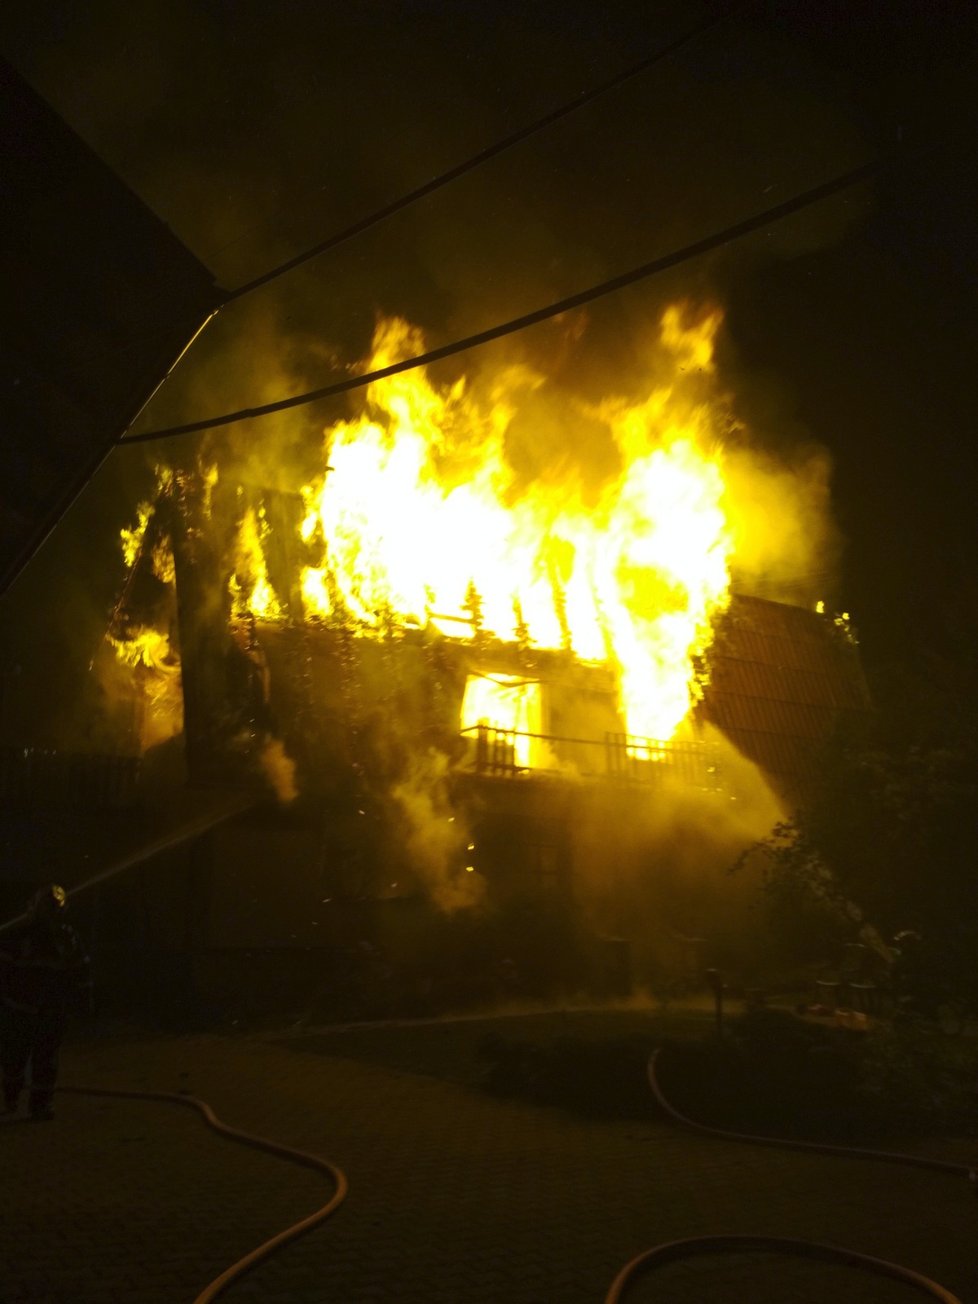 Rodinný dům ve Skalici u Frýdku-Místku zasáhl ničivý požár.